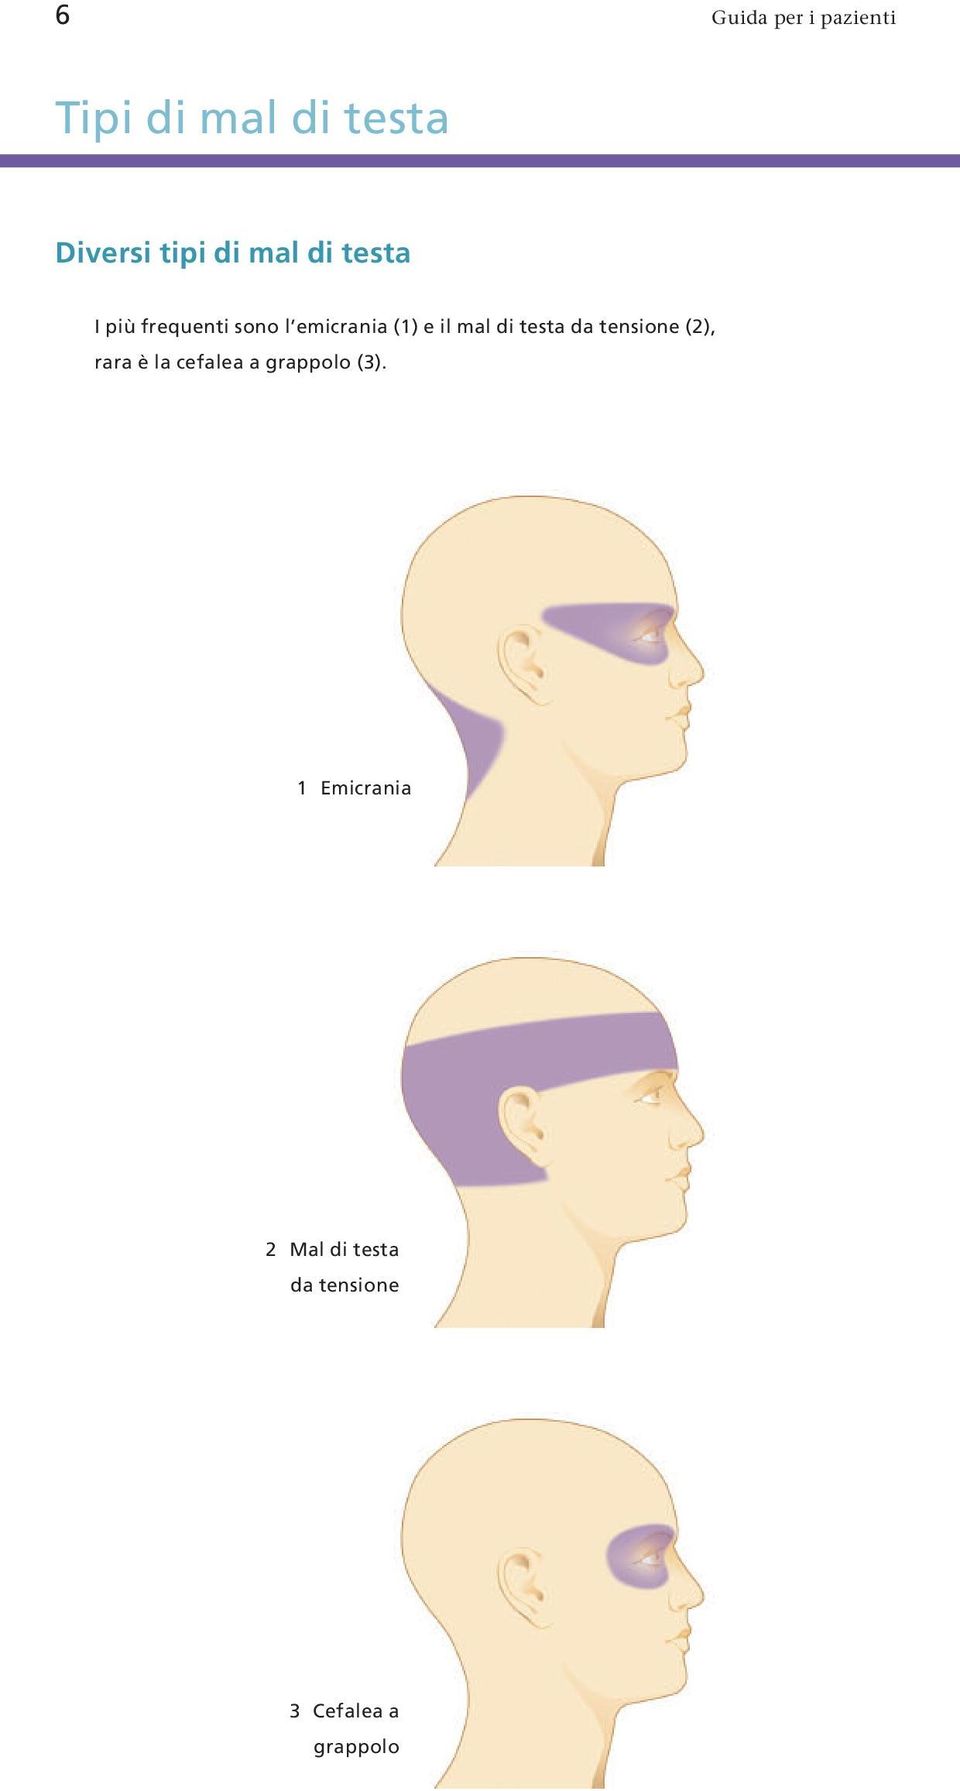 di testa da tensione (2), rara è la cefalea a grappolo (3).